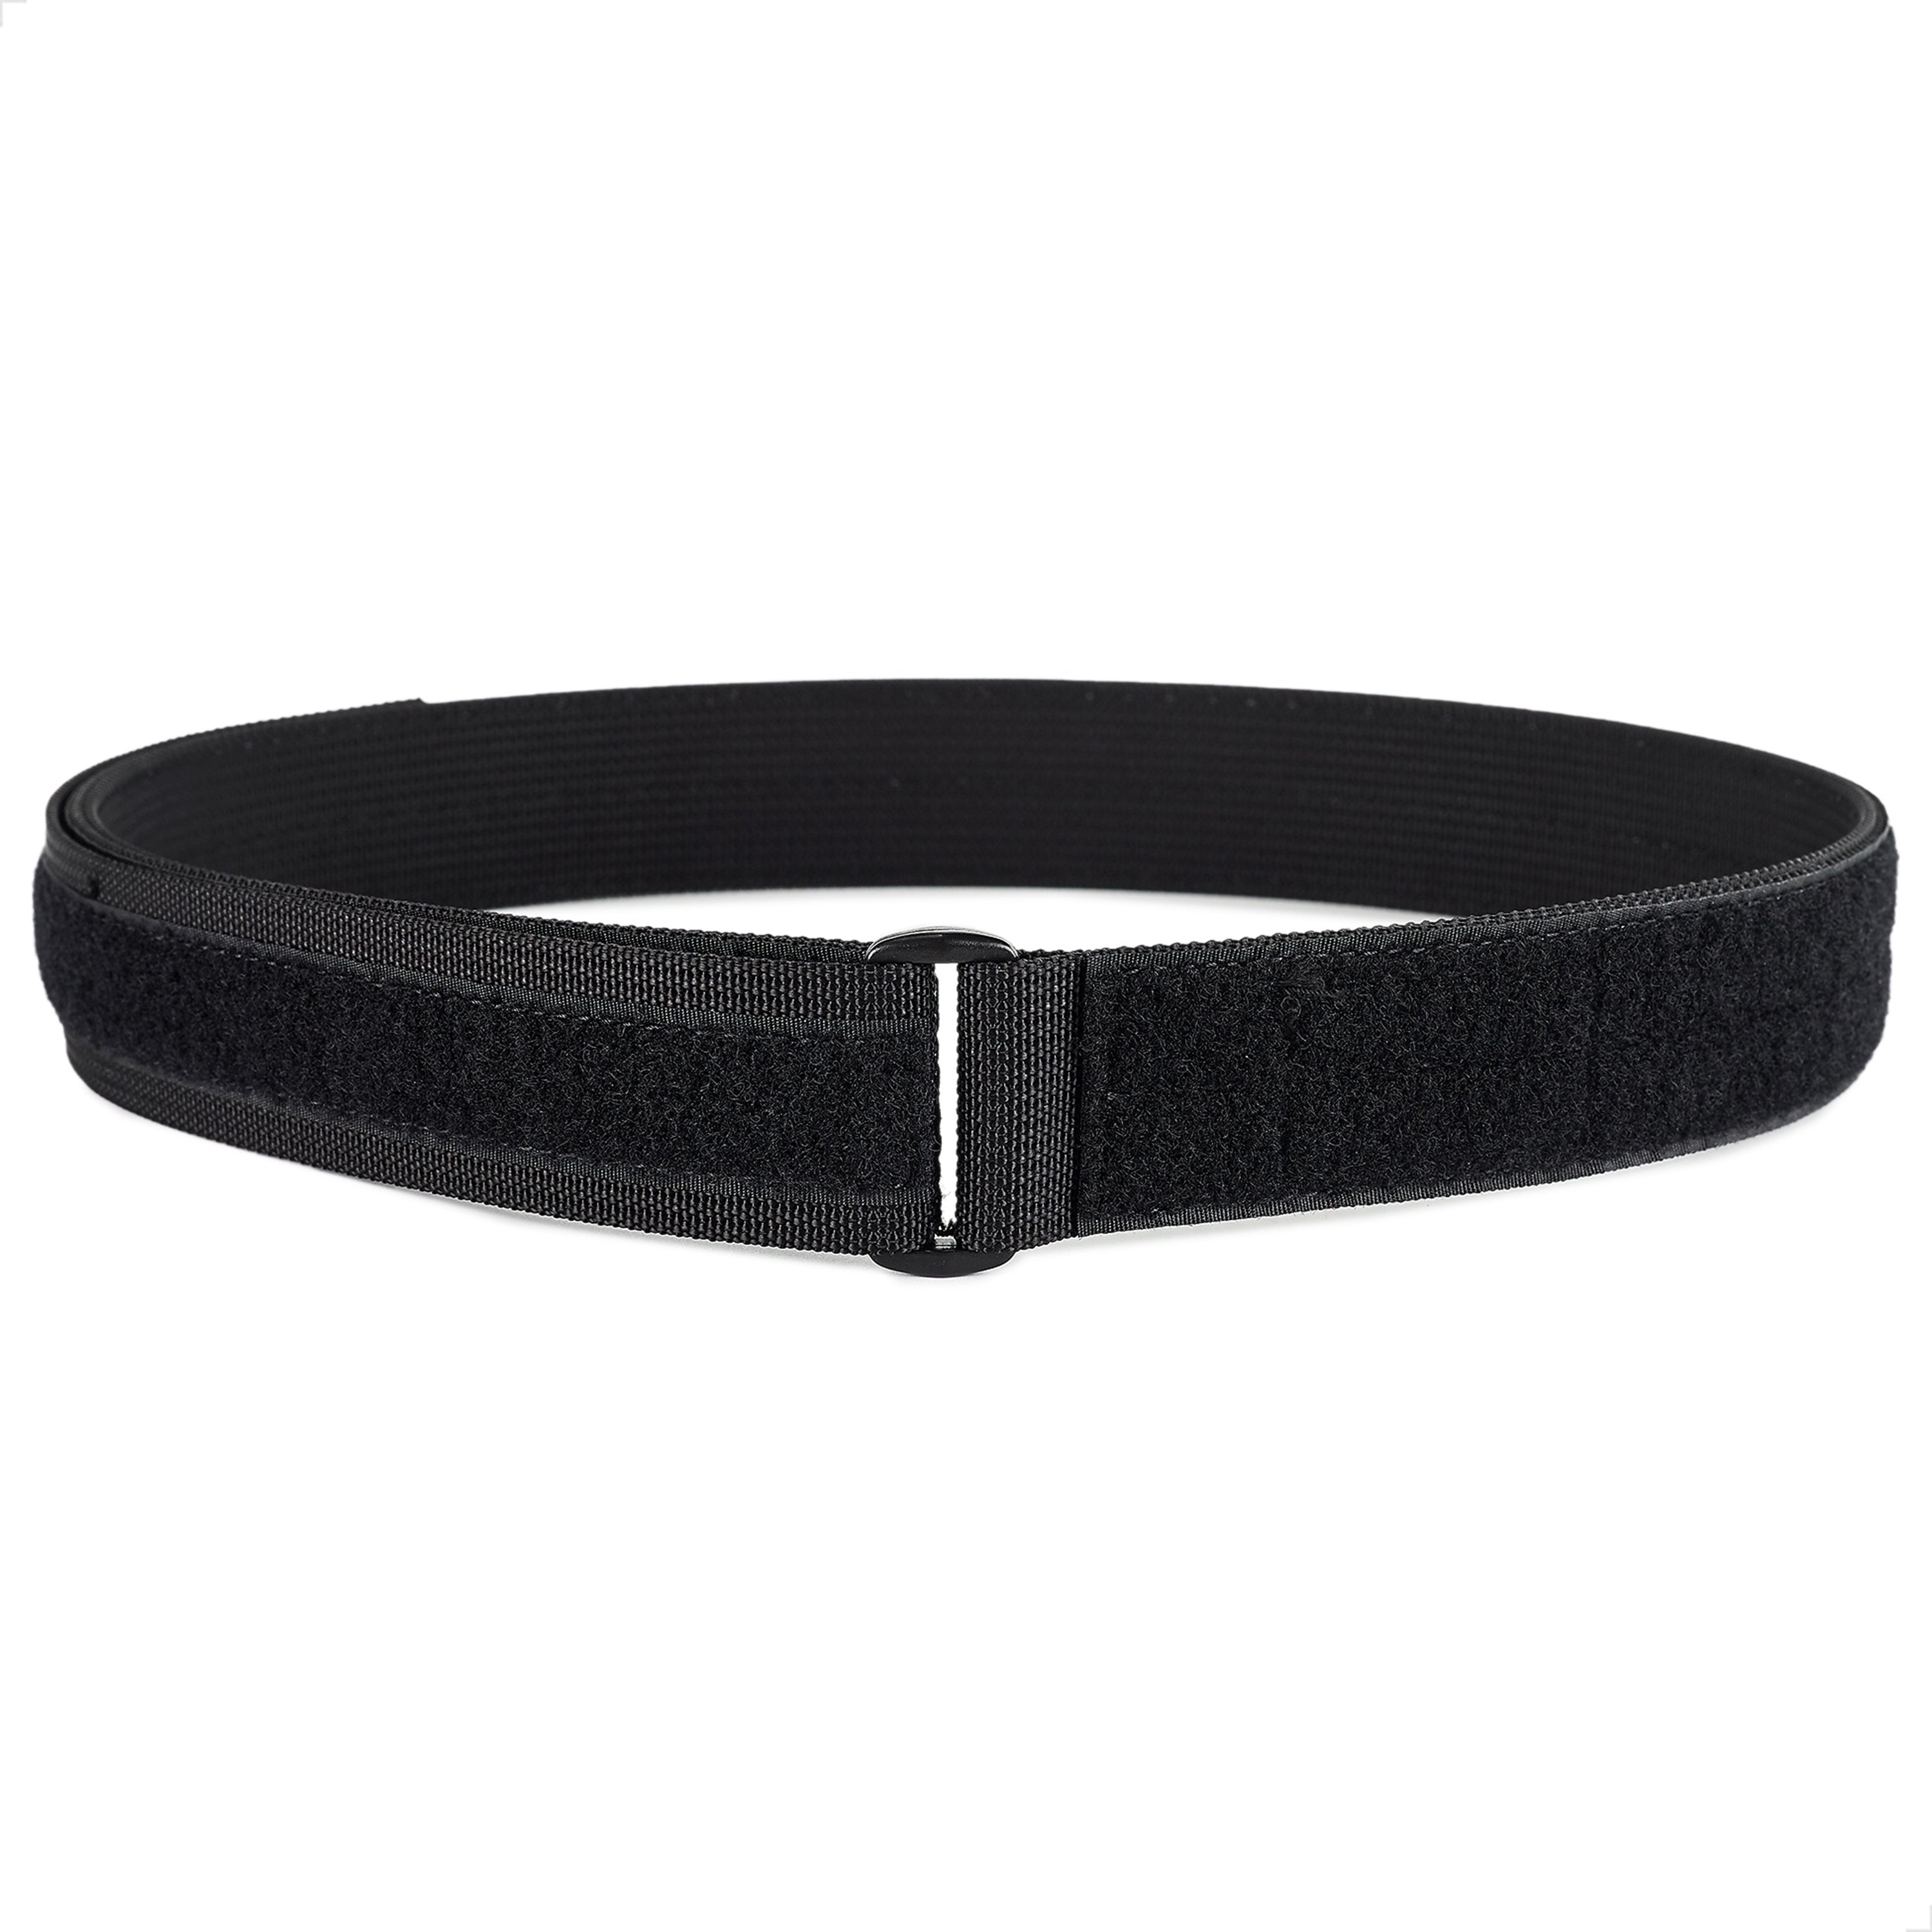 Simple EDC/Inner Belt - Black / S (28-31)